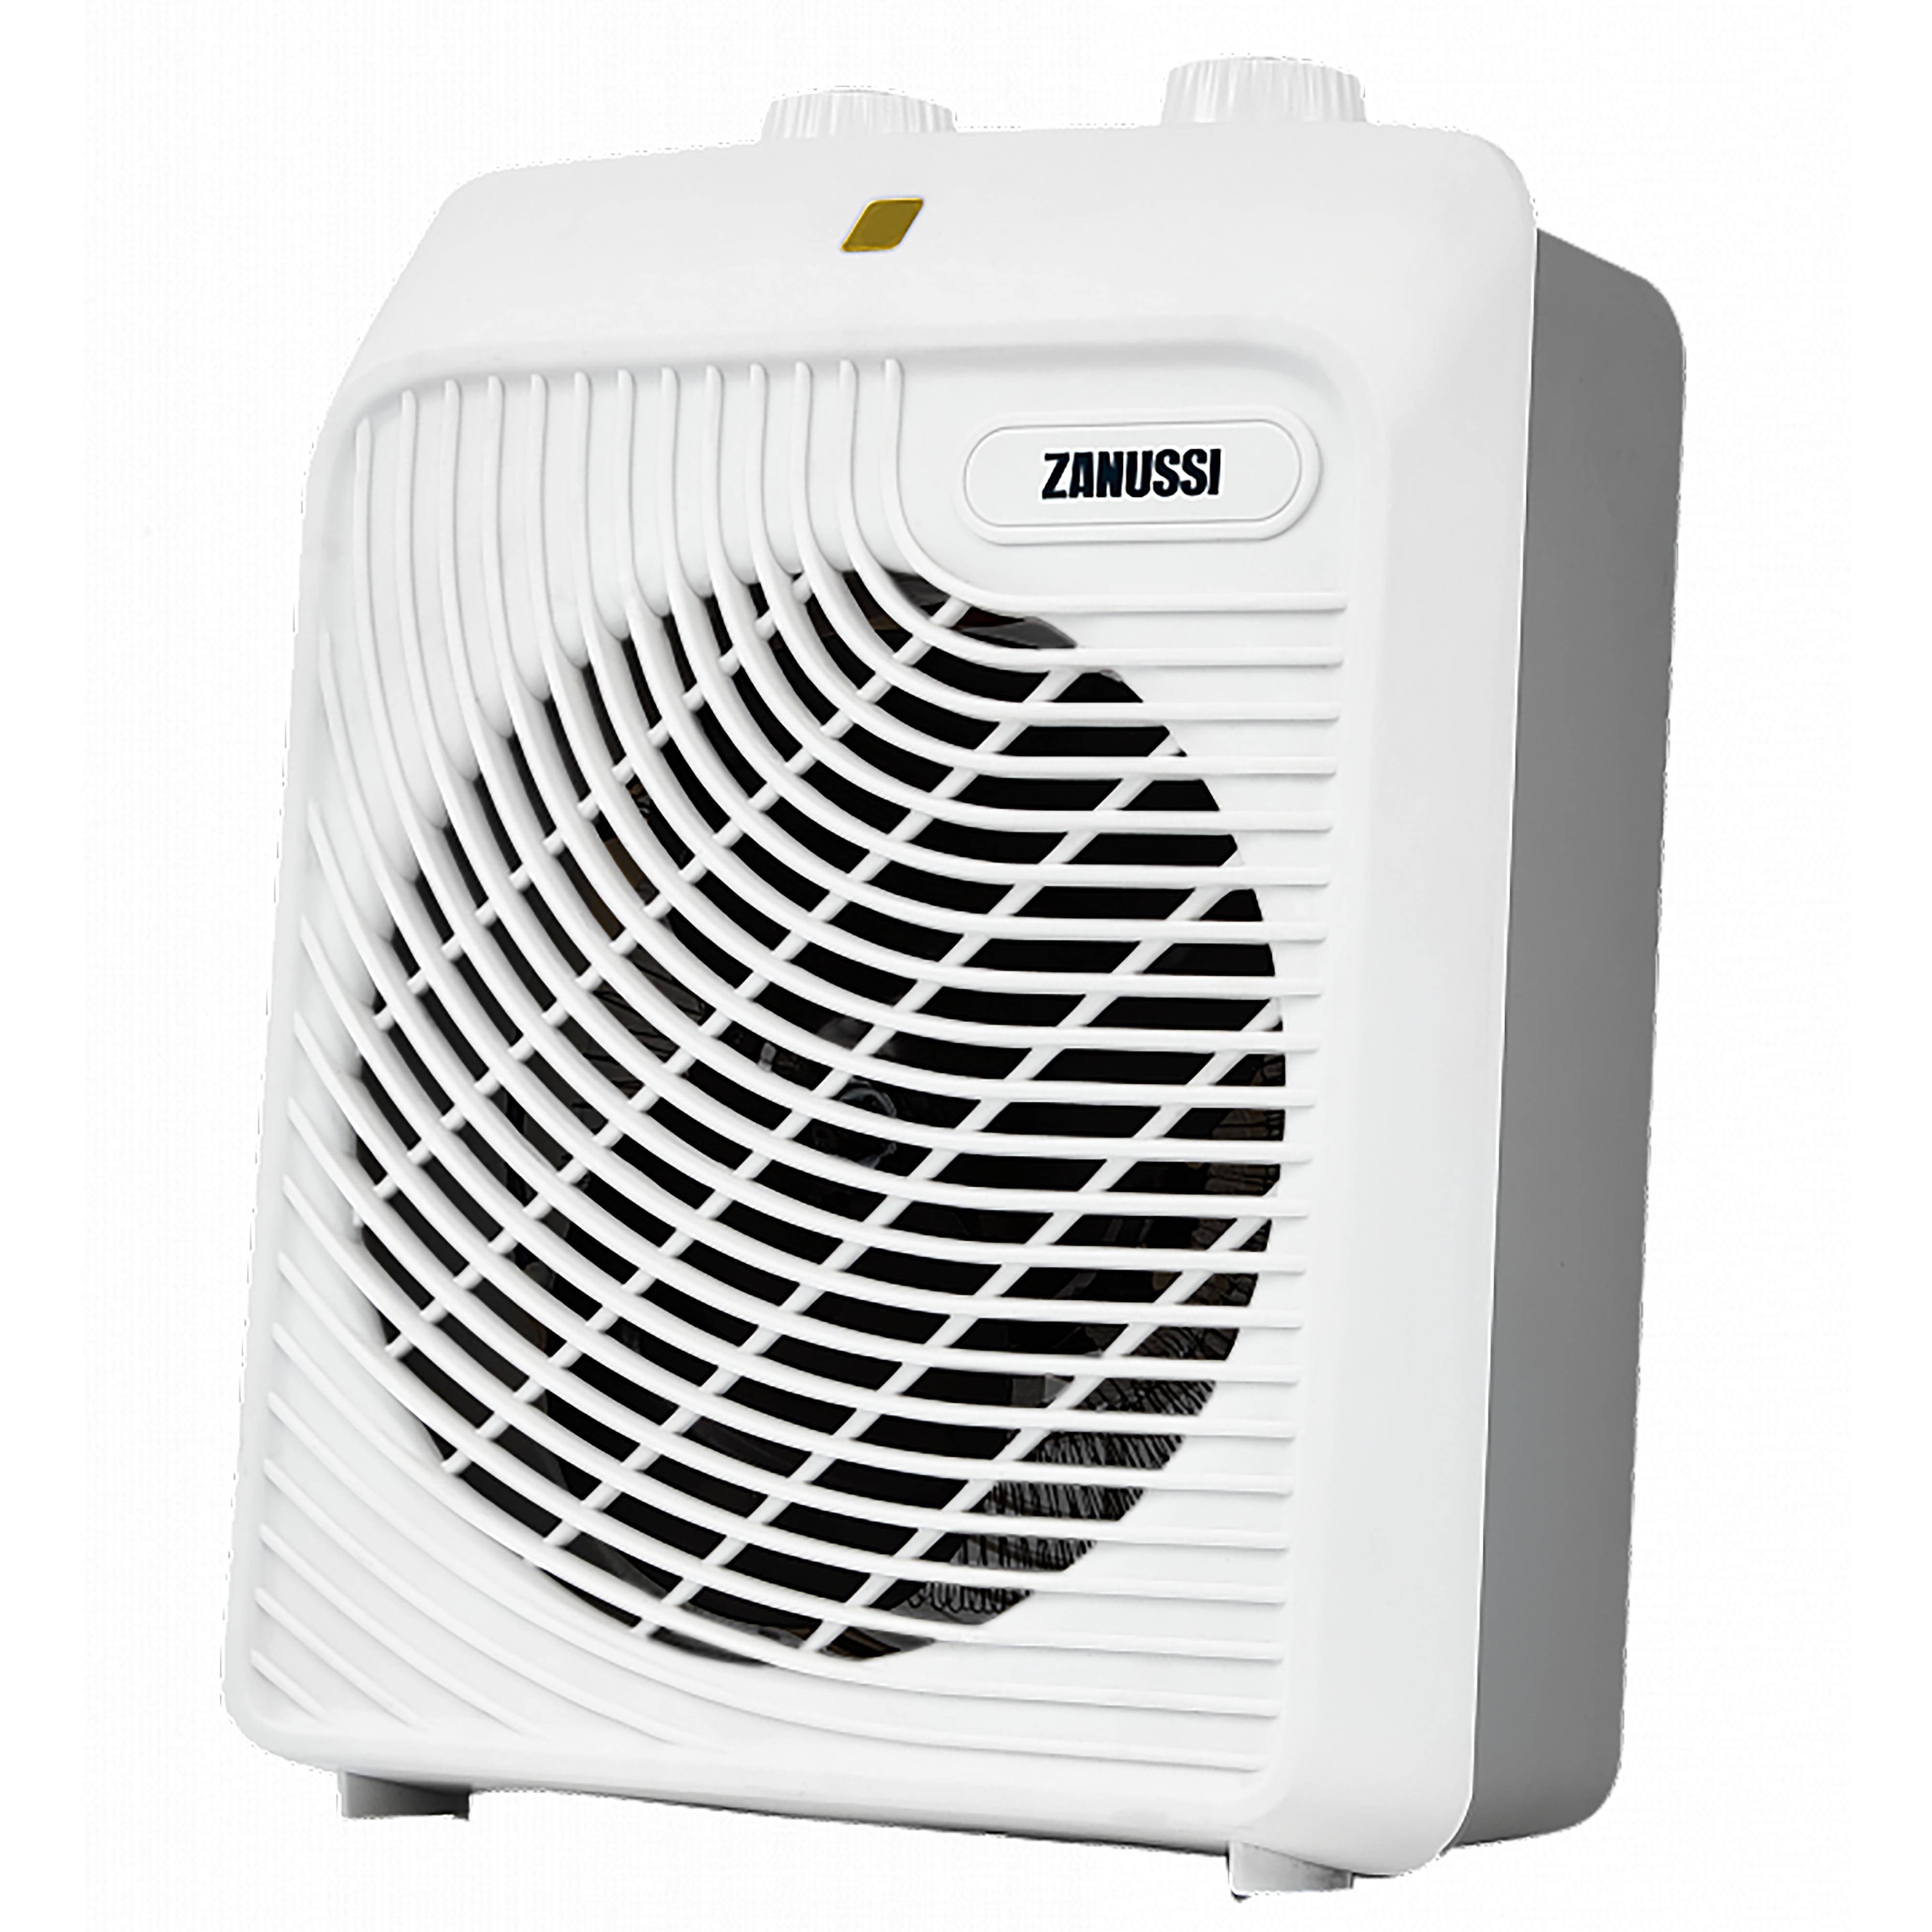 Тепловентилятор Zanussi ZFH/S-204 белый 10a dc24v led цифровой регулятор температуры интеллектуальный термостат система контроля температуры при нагреве и охлаждении с датчиком